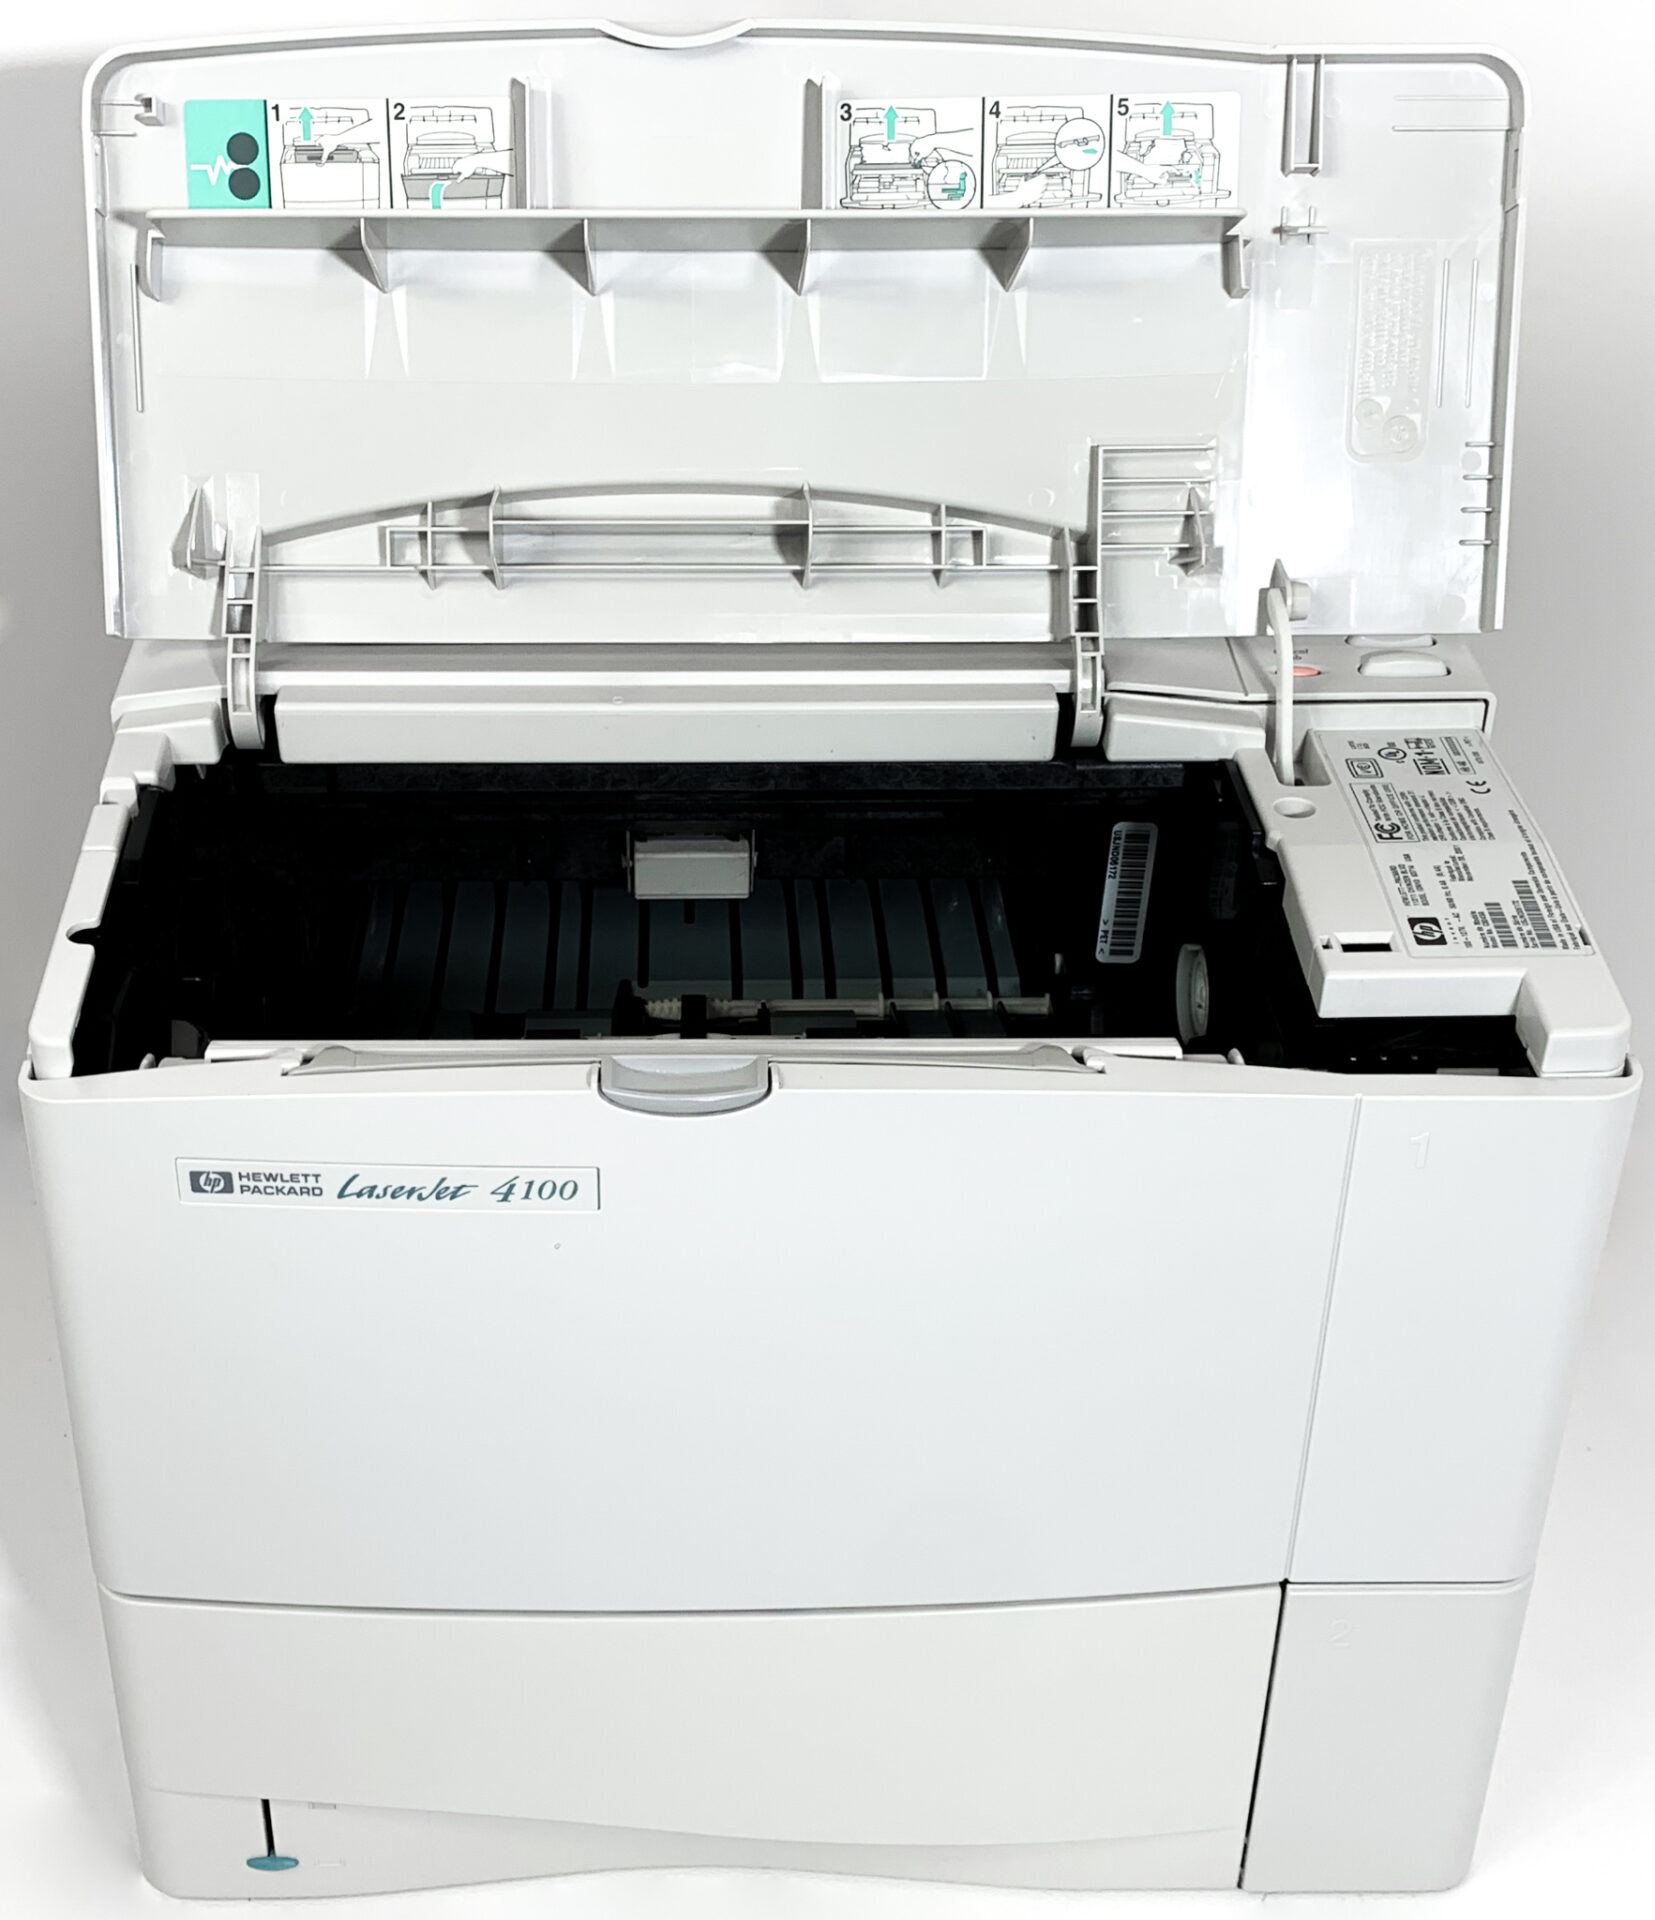 Hewlett Packard 4100N Laserjet Printer 